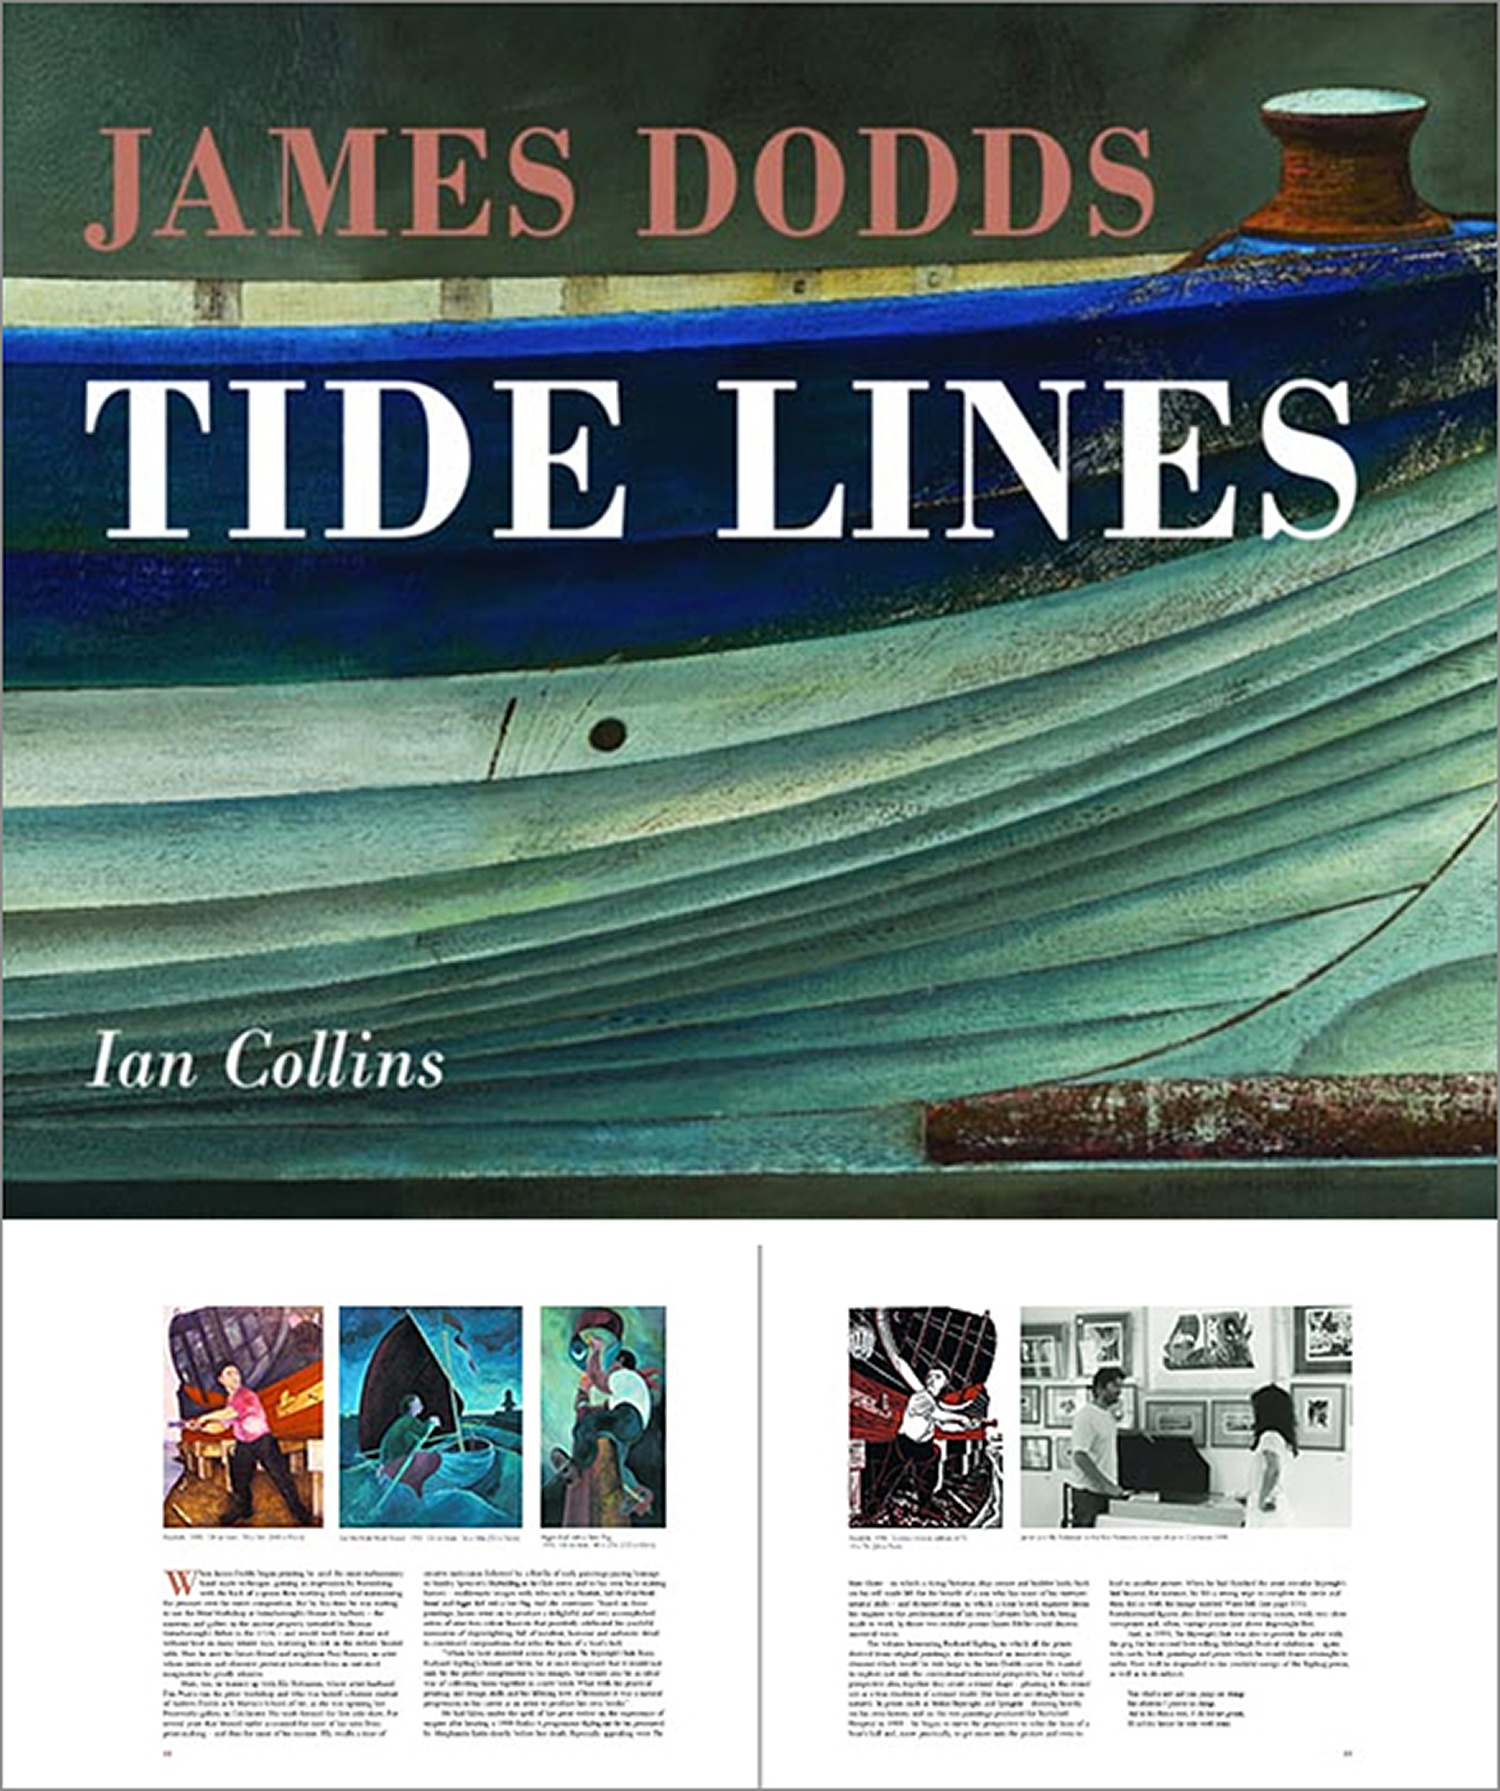 Tidelines by James Dodds